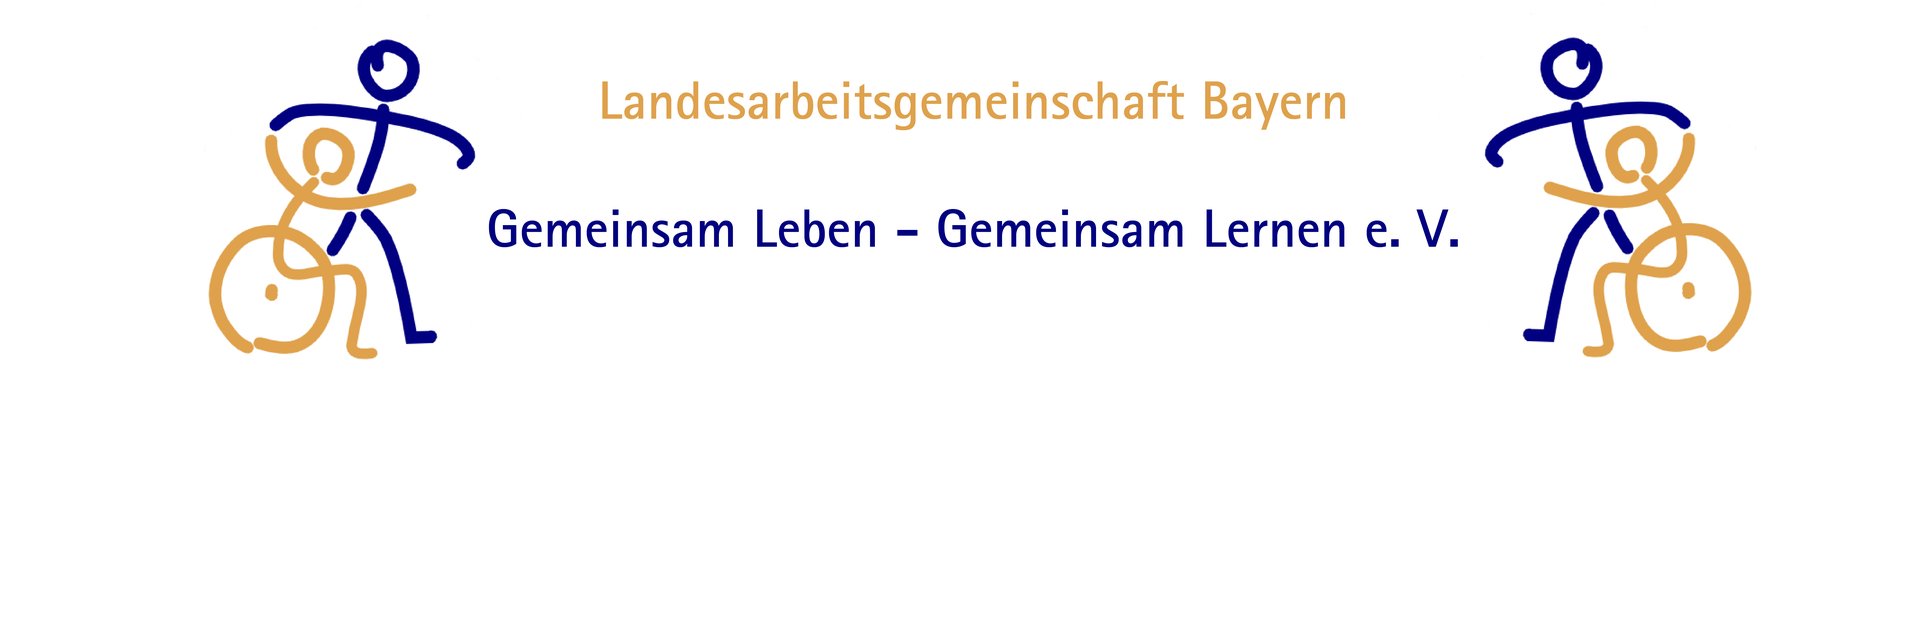 Landesarbeitsgemeinschaft Bayern Gemeinsam Leben - Gemeinsam Lernen e.V.